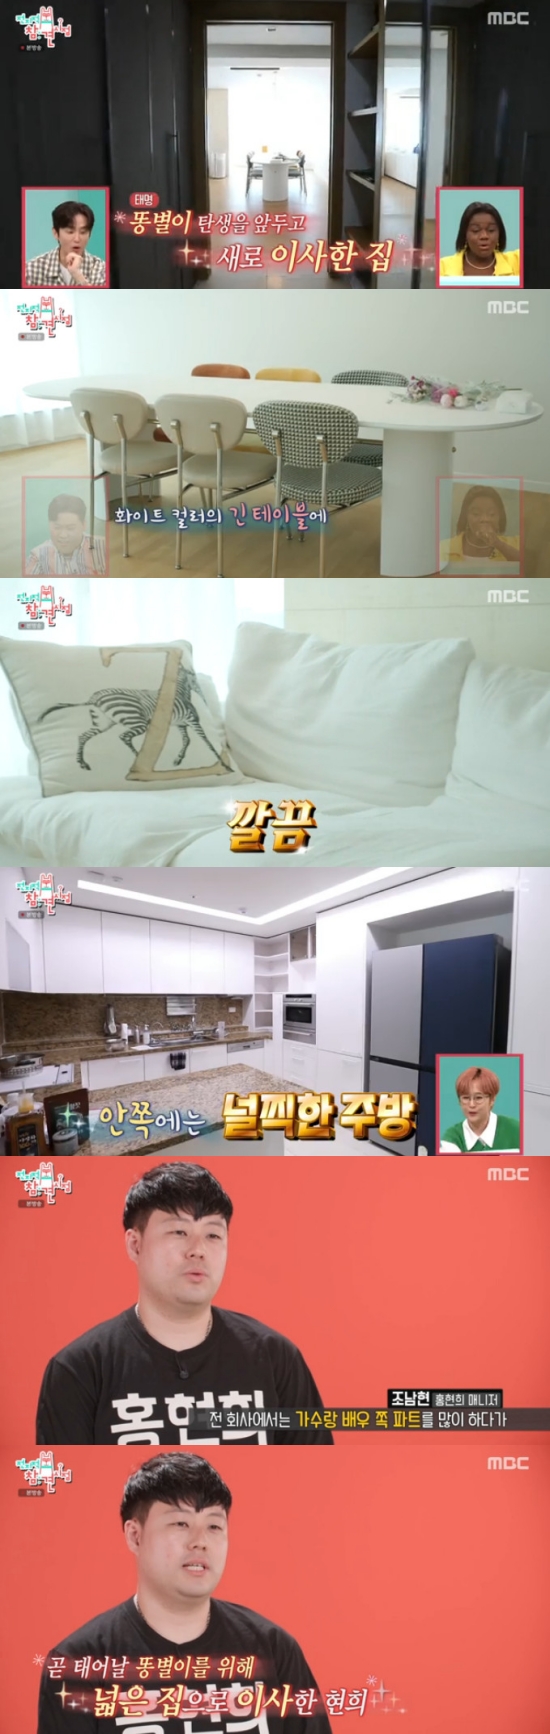 Hong Hyeon-hee Jay-Won, mengungkapkan rumah baru pindah sebelum melahirkan ‘Luar Biasa’ (pada saat partisipasi)